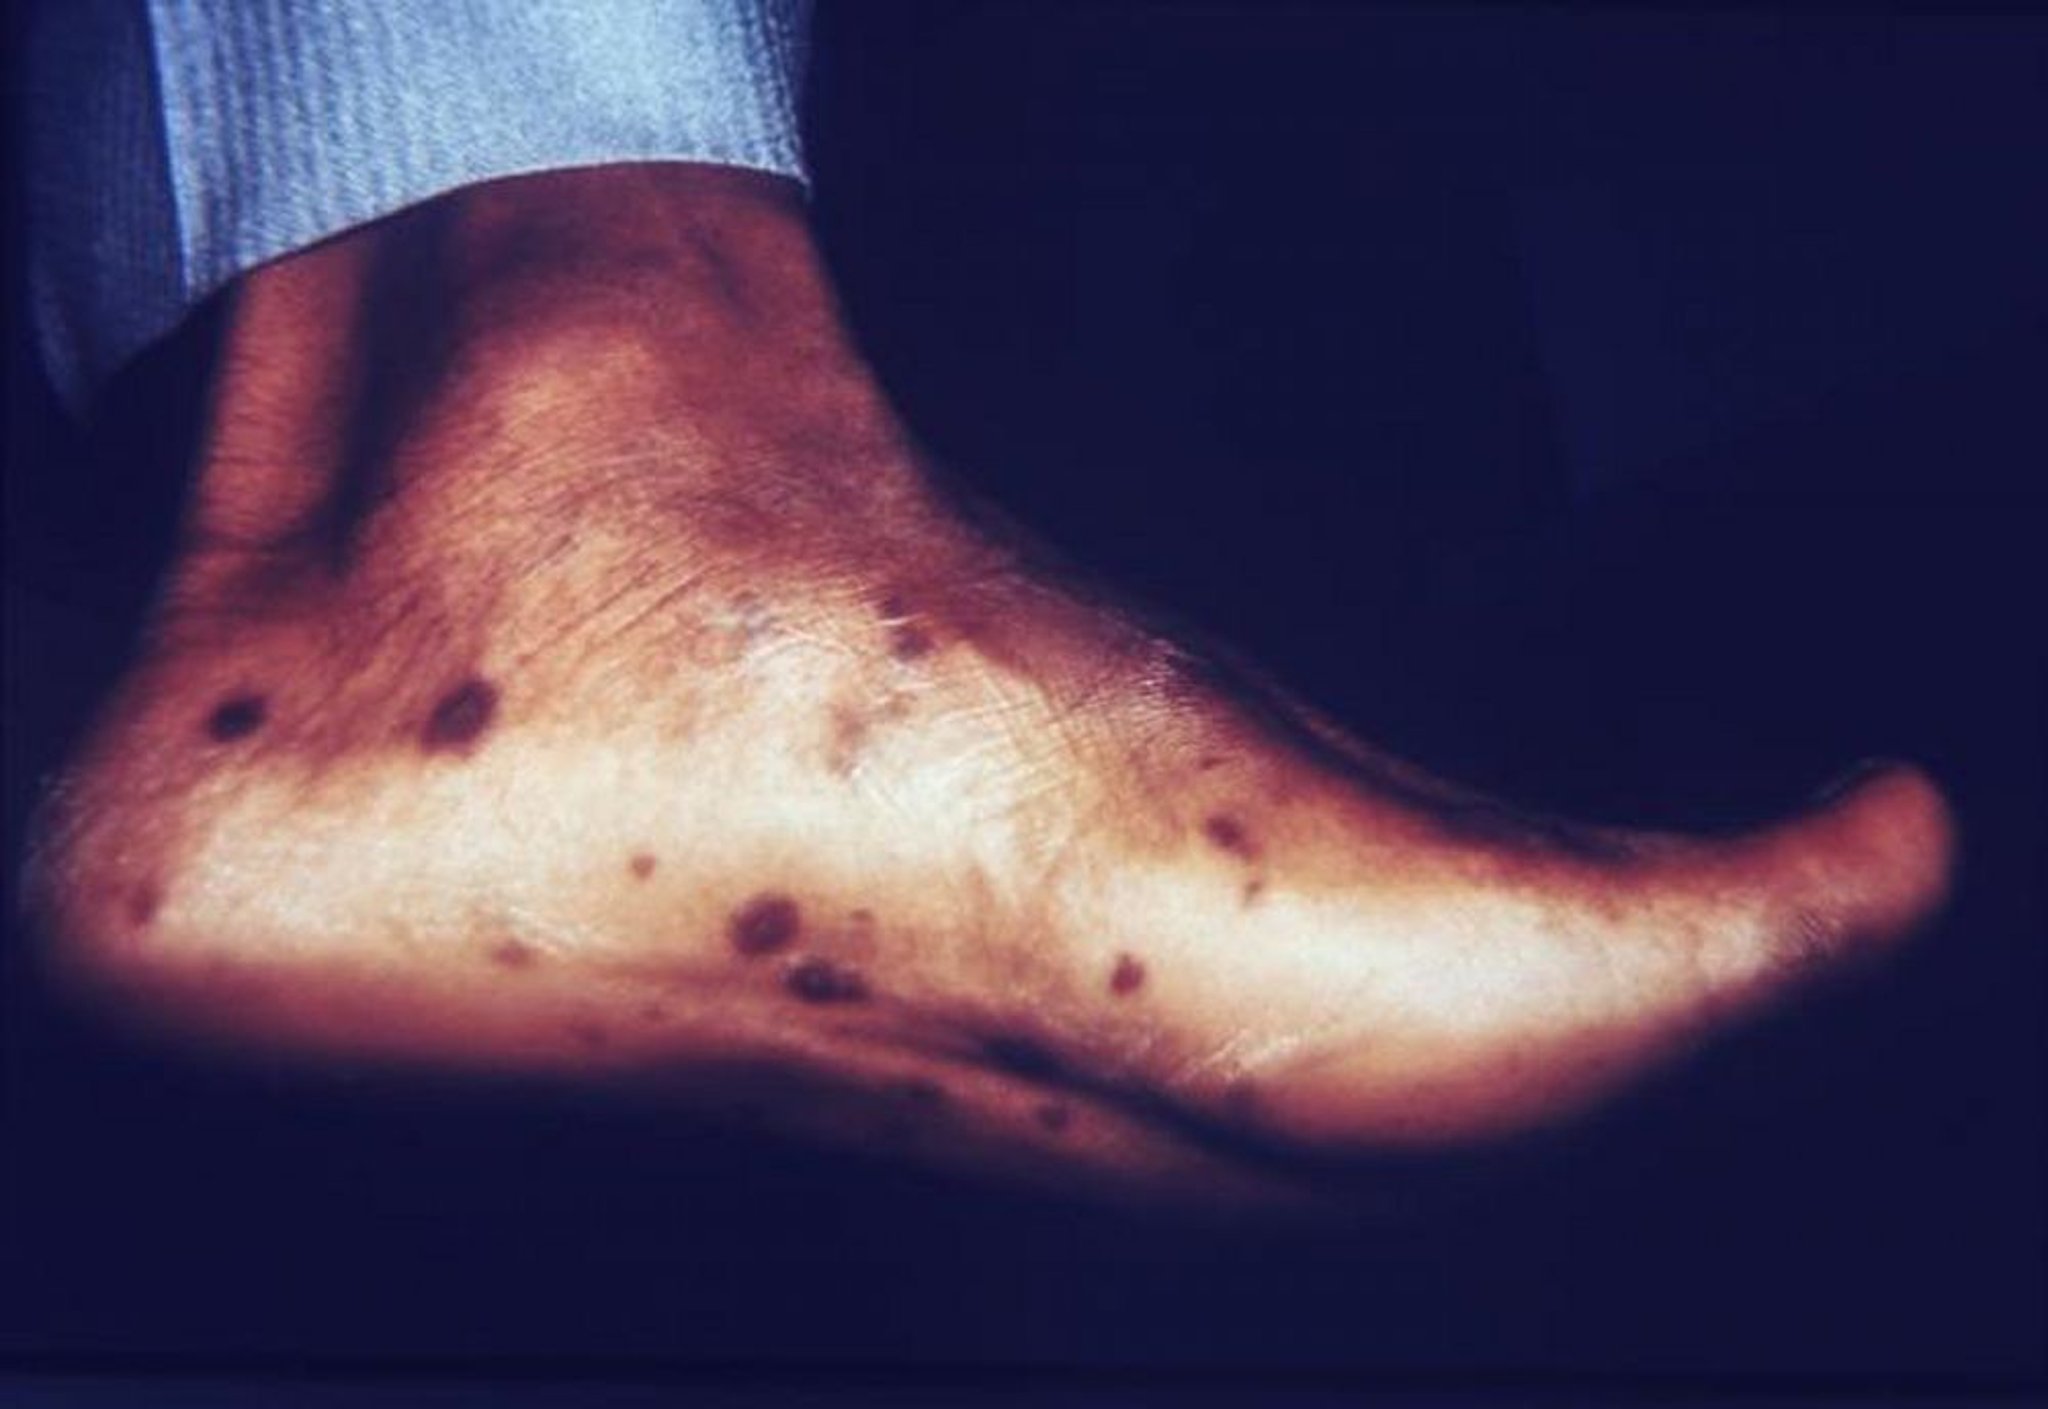 Сифилис — вторичный: вызывает сыпь на подошвах стоп